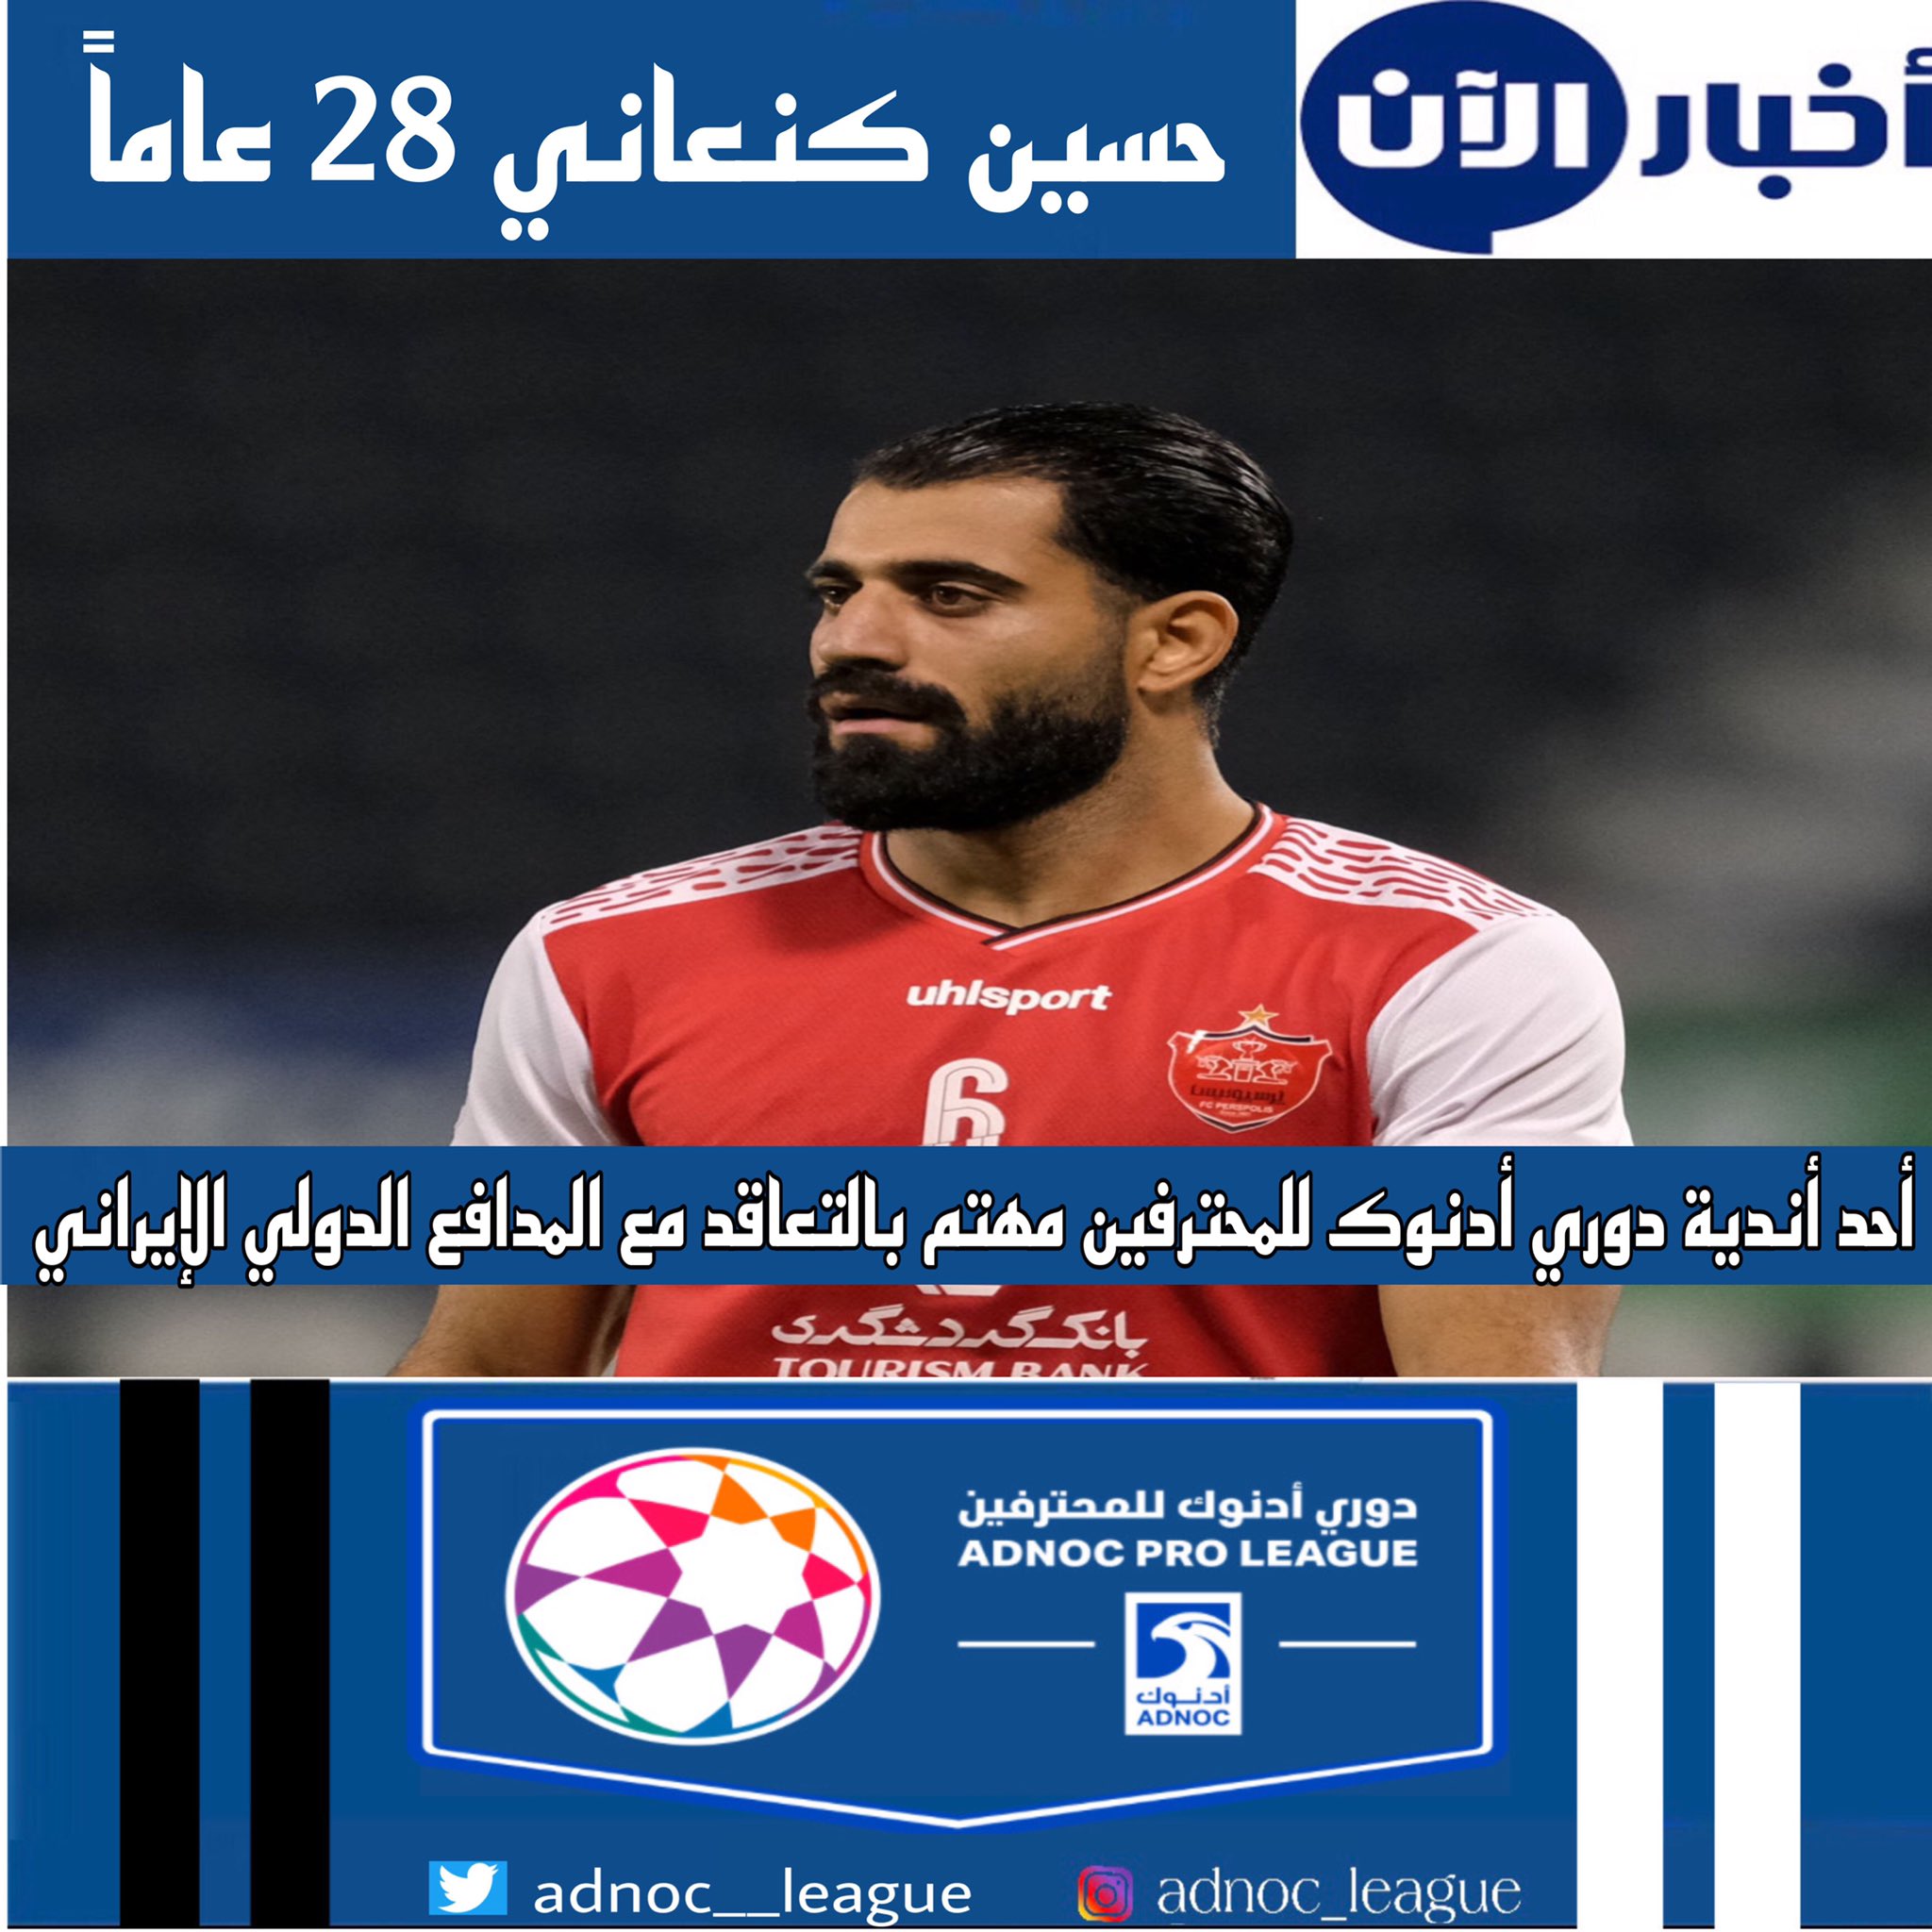 باشگاه اماراتی به دنبال مدافع تیم ملی ایران